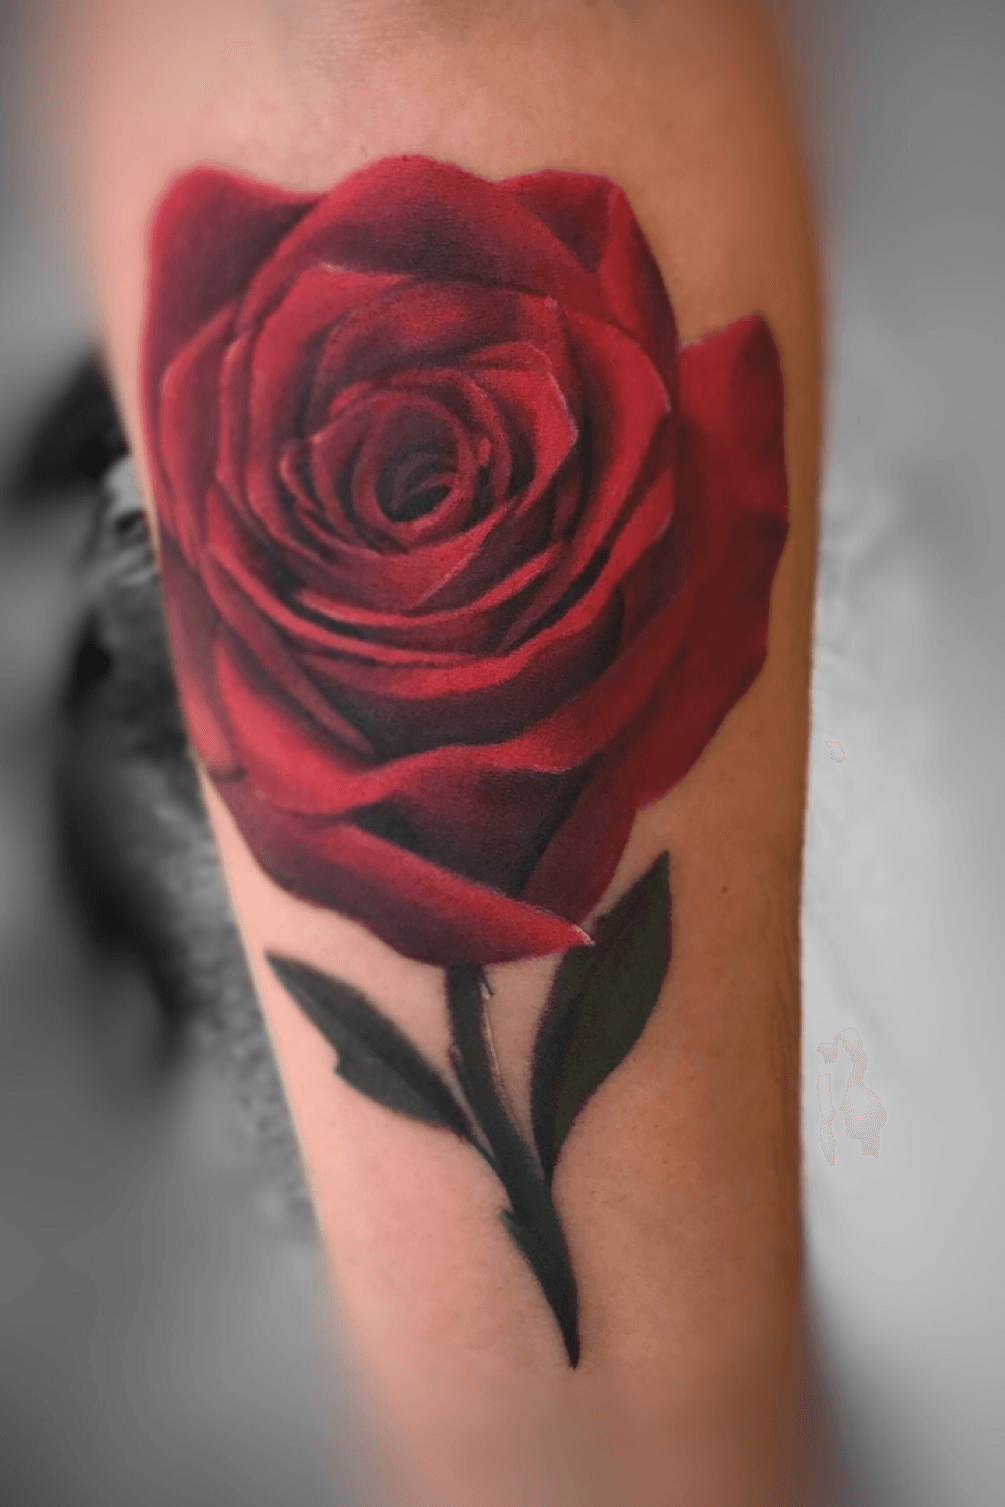 Rose Tattoo Images  Free Download on Freepik